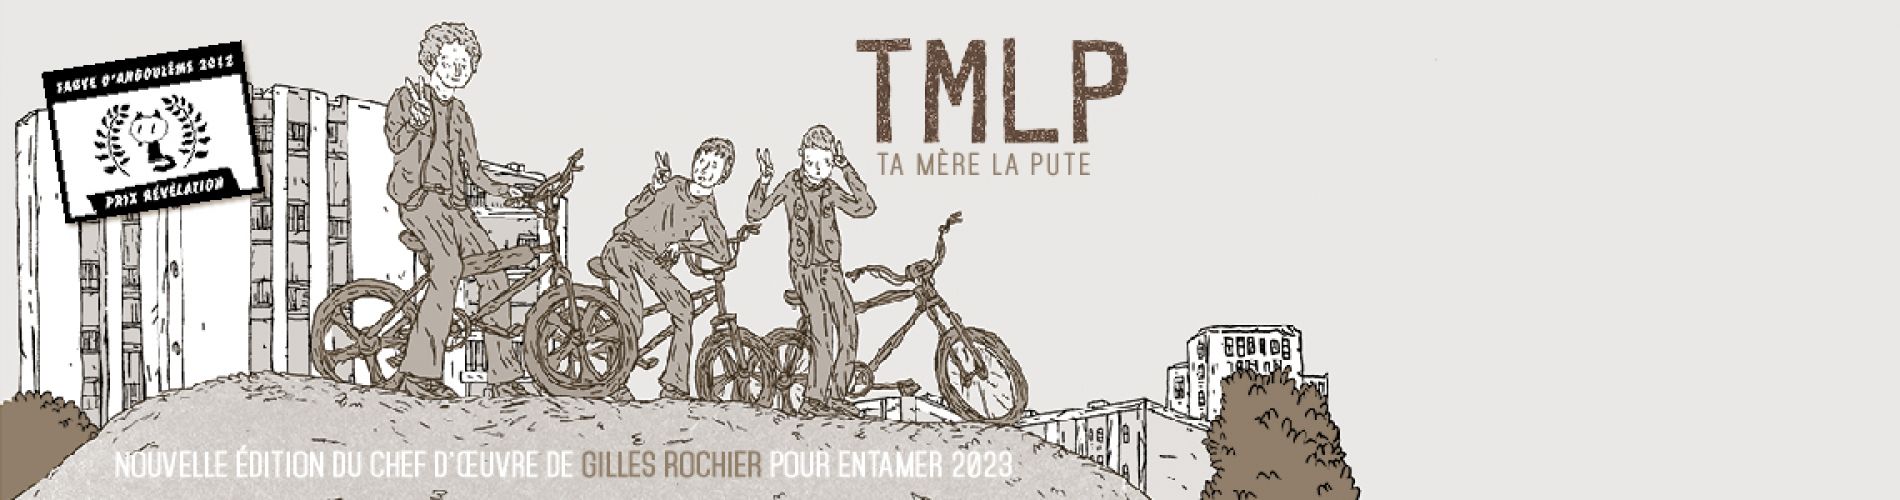 TMLP (nouvelle édition)